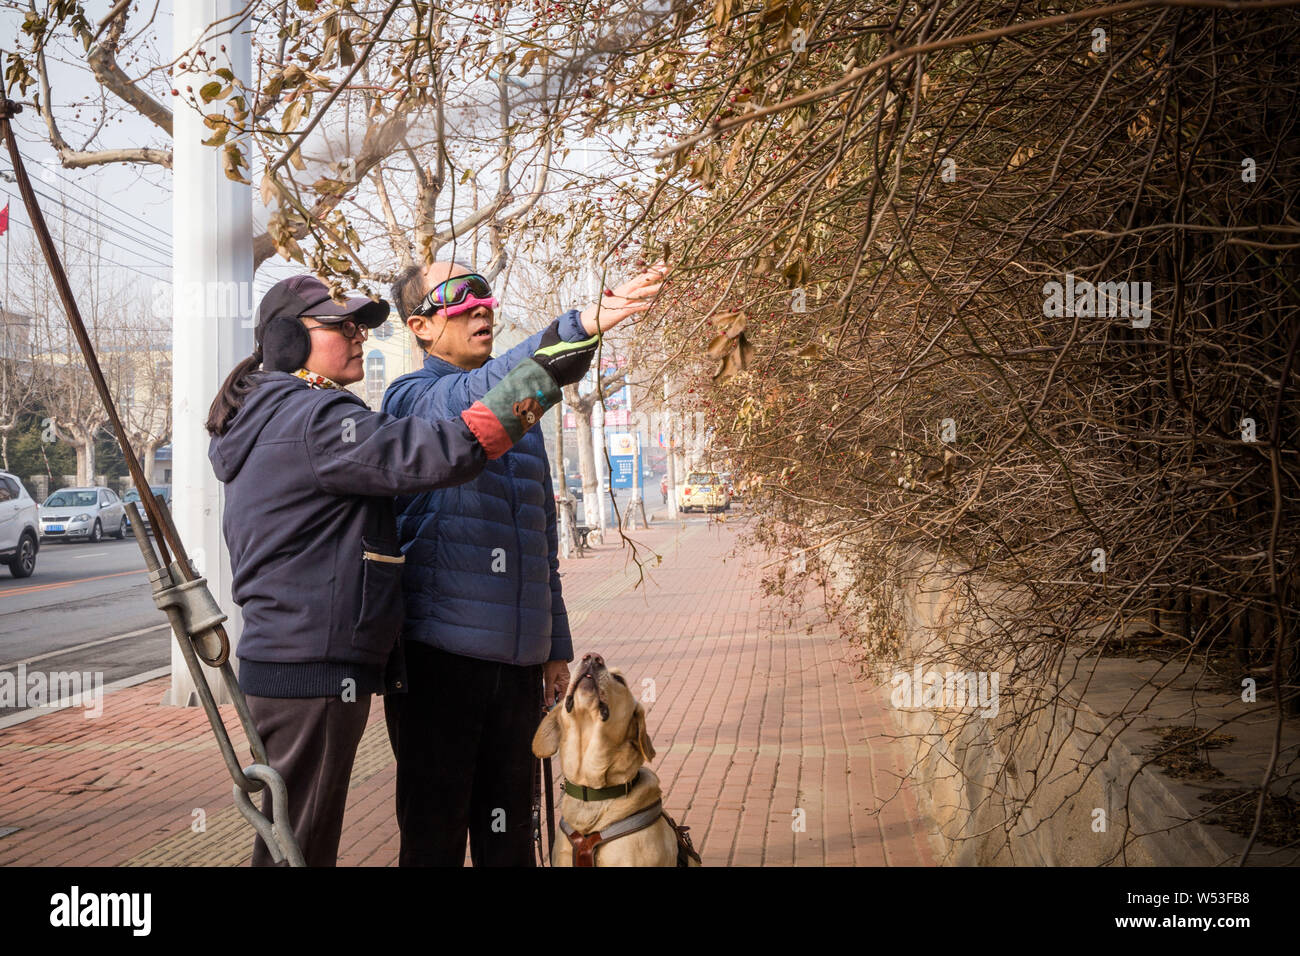 Chinesischen Führer Hundetrainer Wang Xin, die mit einem Doktorat in Psychologie an einer Universität in Japan studiert, beauftragt eine blinde Person mit dem zu Fuß Stockfoto